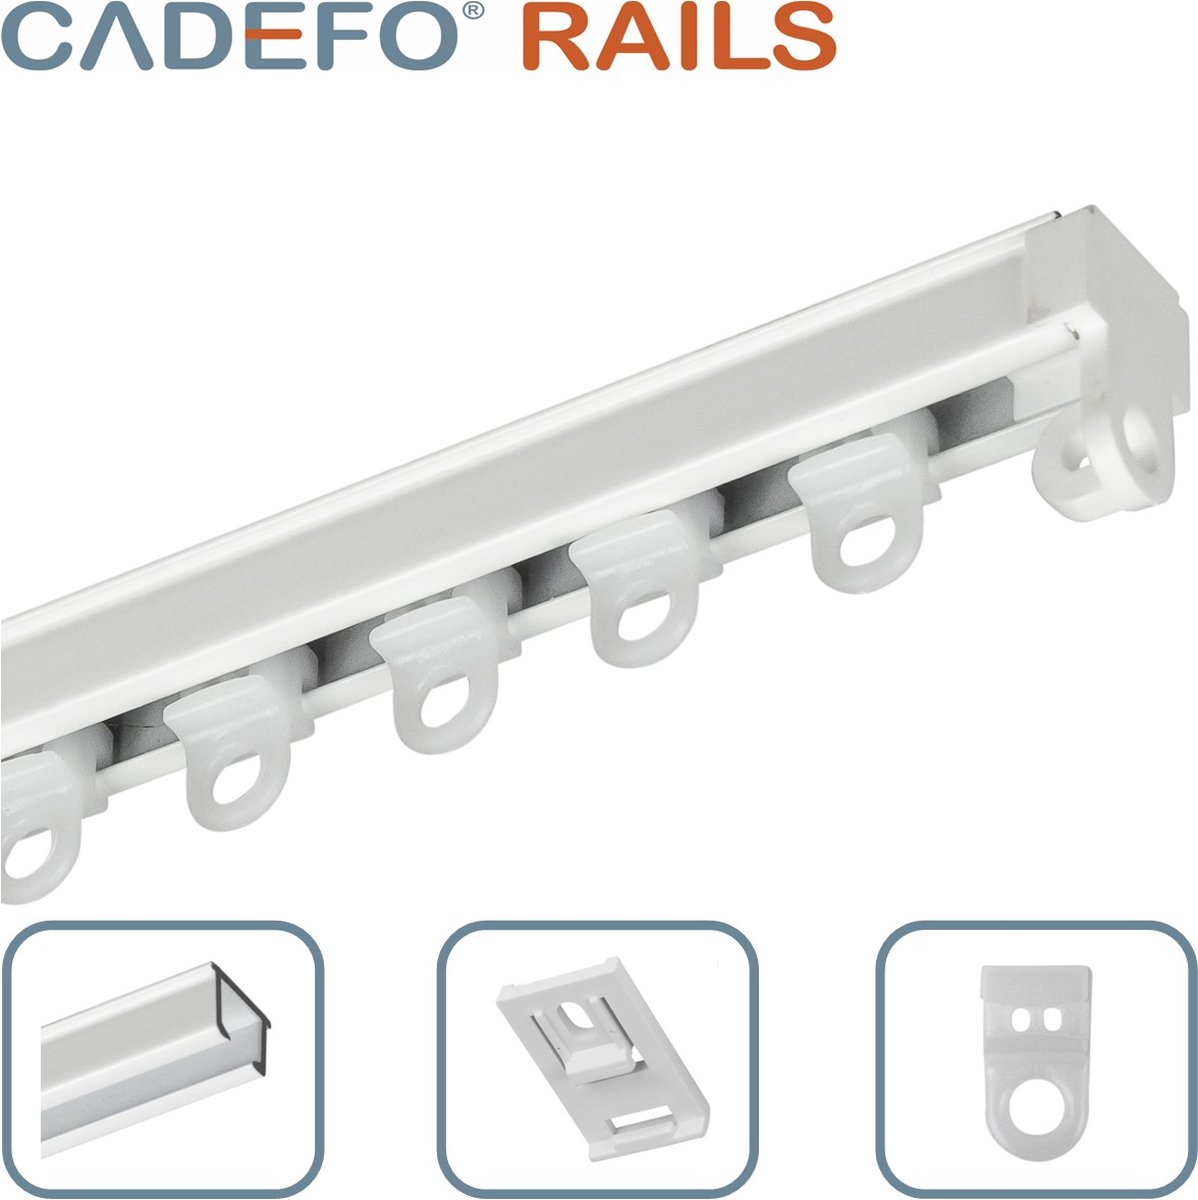 CADEFO RAILS (401 - 450 cm) Gordijnrails - Compleet op maat! - UIT 1 STUK - Leverbaar tot 6 meter - Plafondbevestiging - Lengte 424 cm